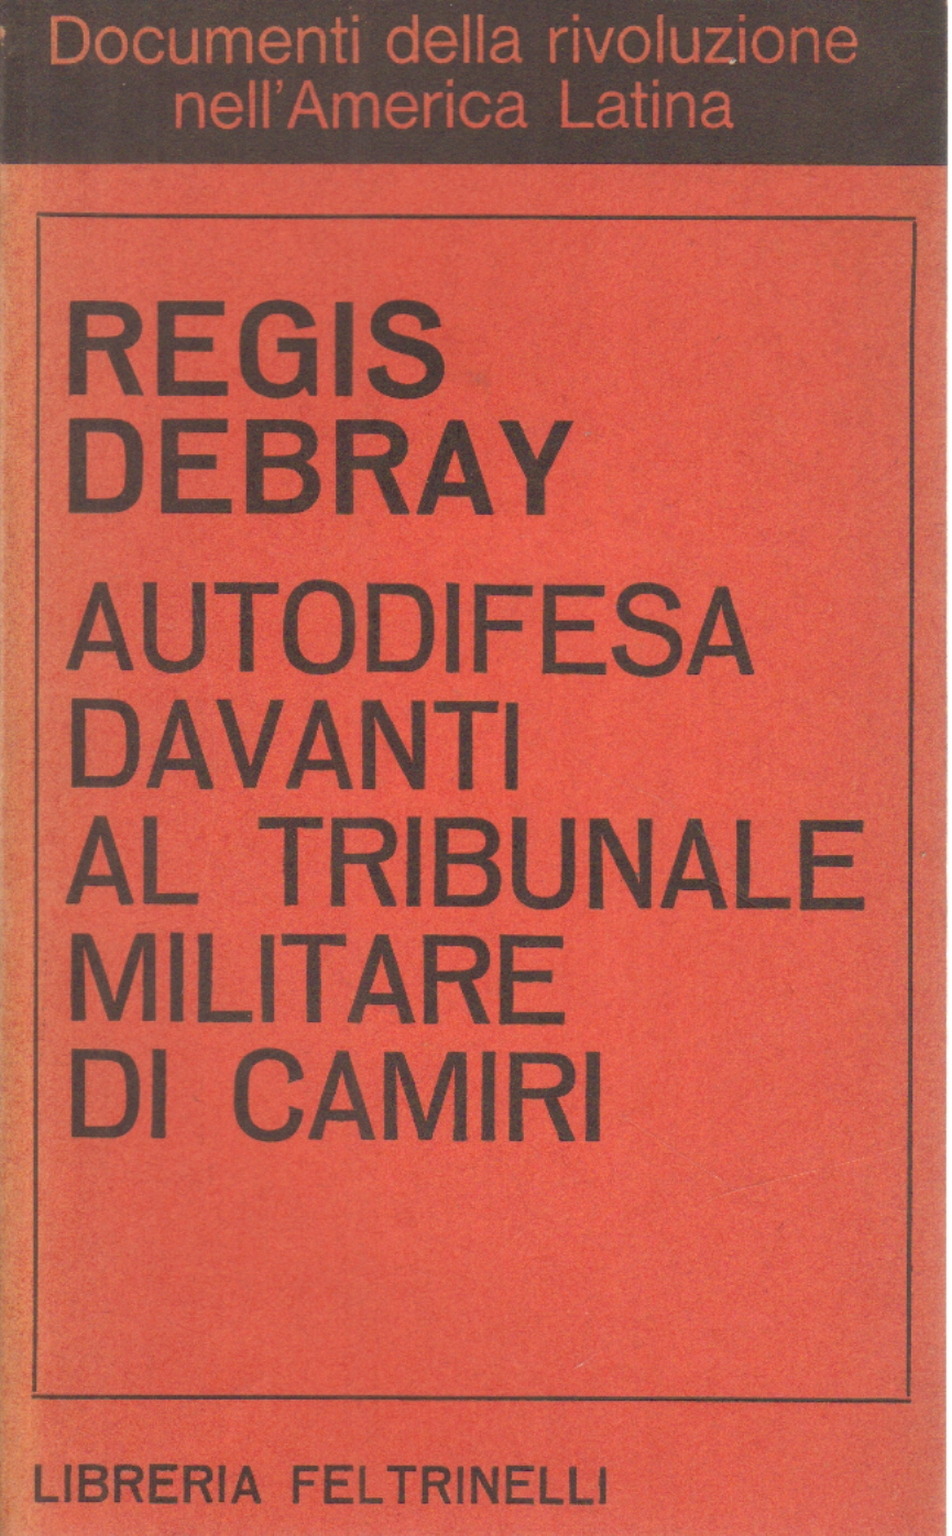 Autodefensa ante el tribunal militar de Camiri, Régis Debray